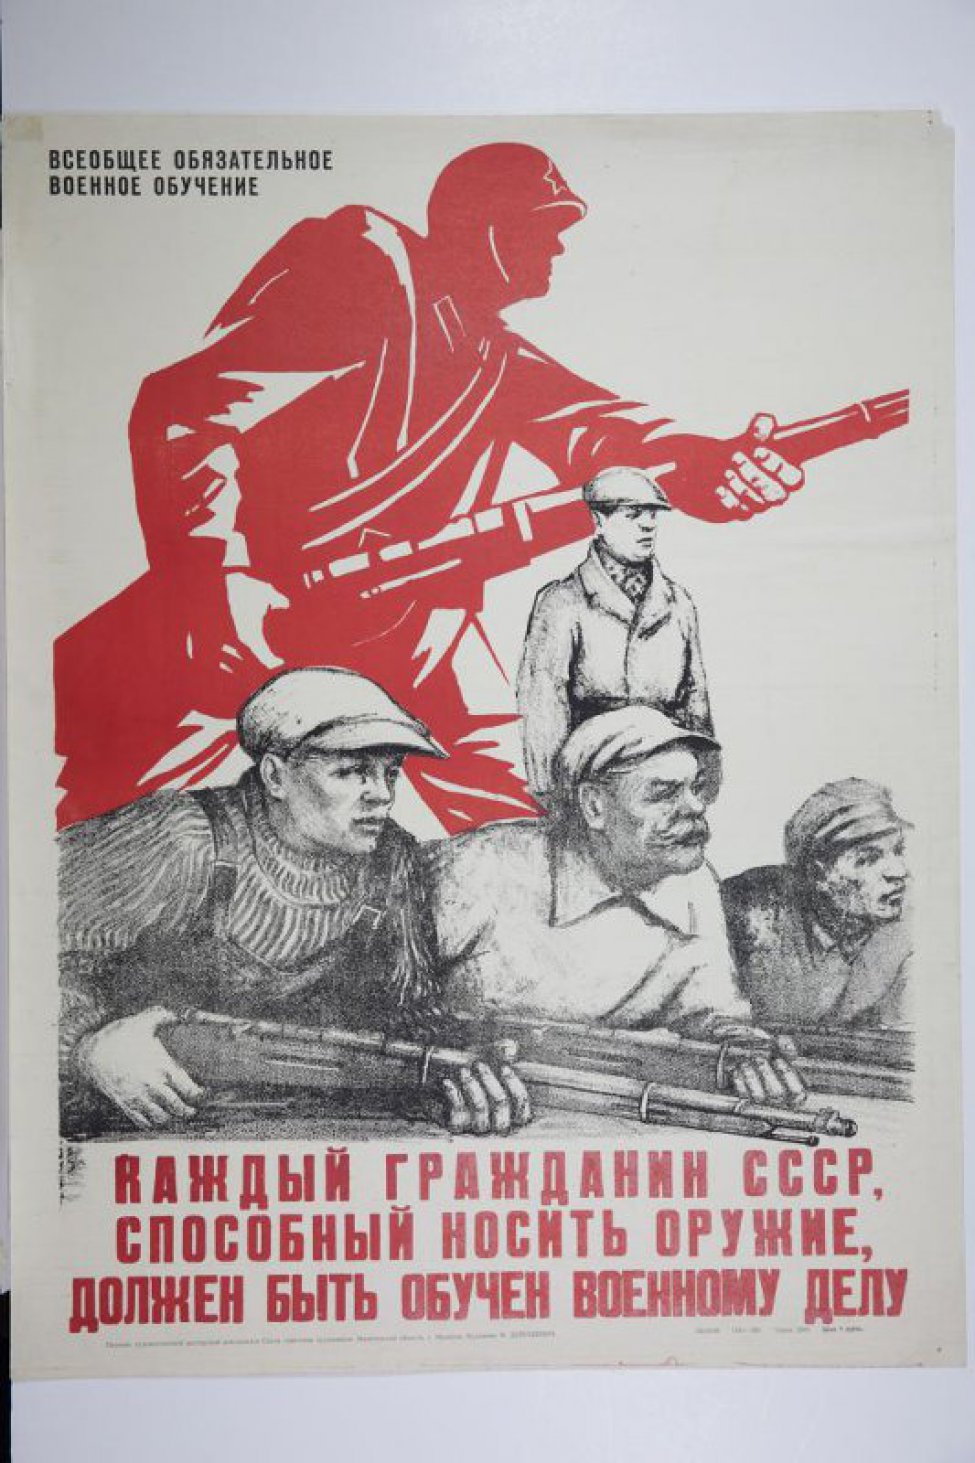 Изображены трое рабочих по пояс, с винтовками.За ними фигуры в штатском,позади красный силуэт красноармейца в профиль с винтовкой. На верху текст:"Всеобщее... Обучение".